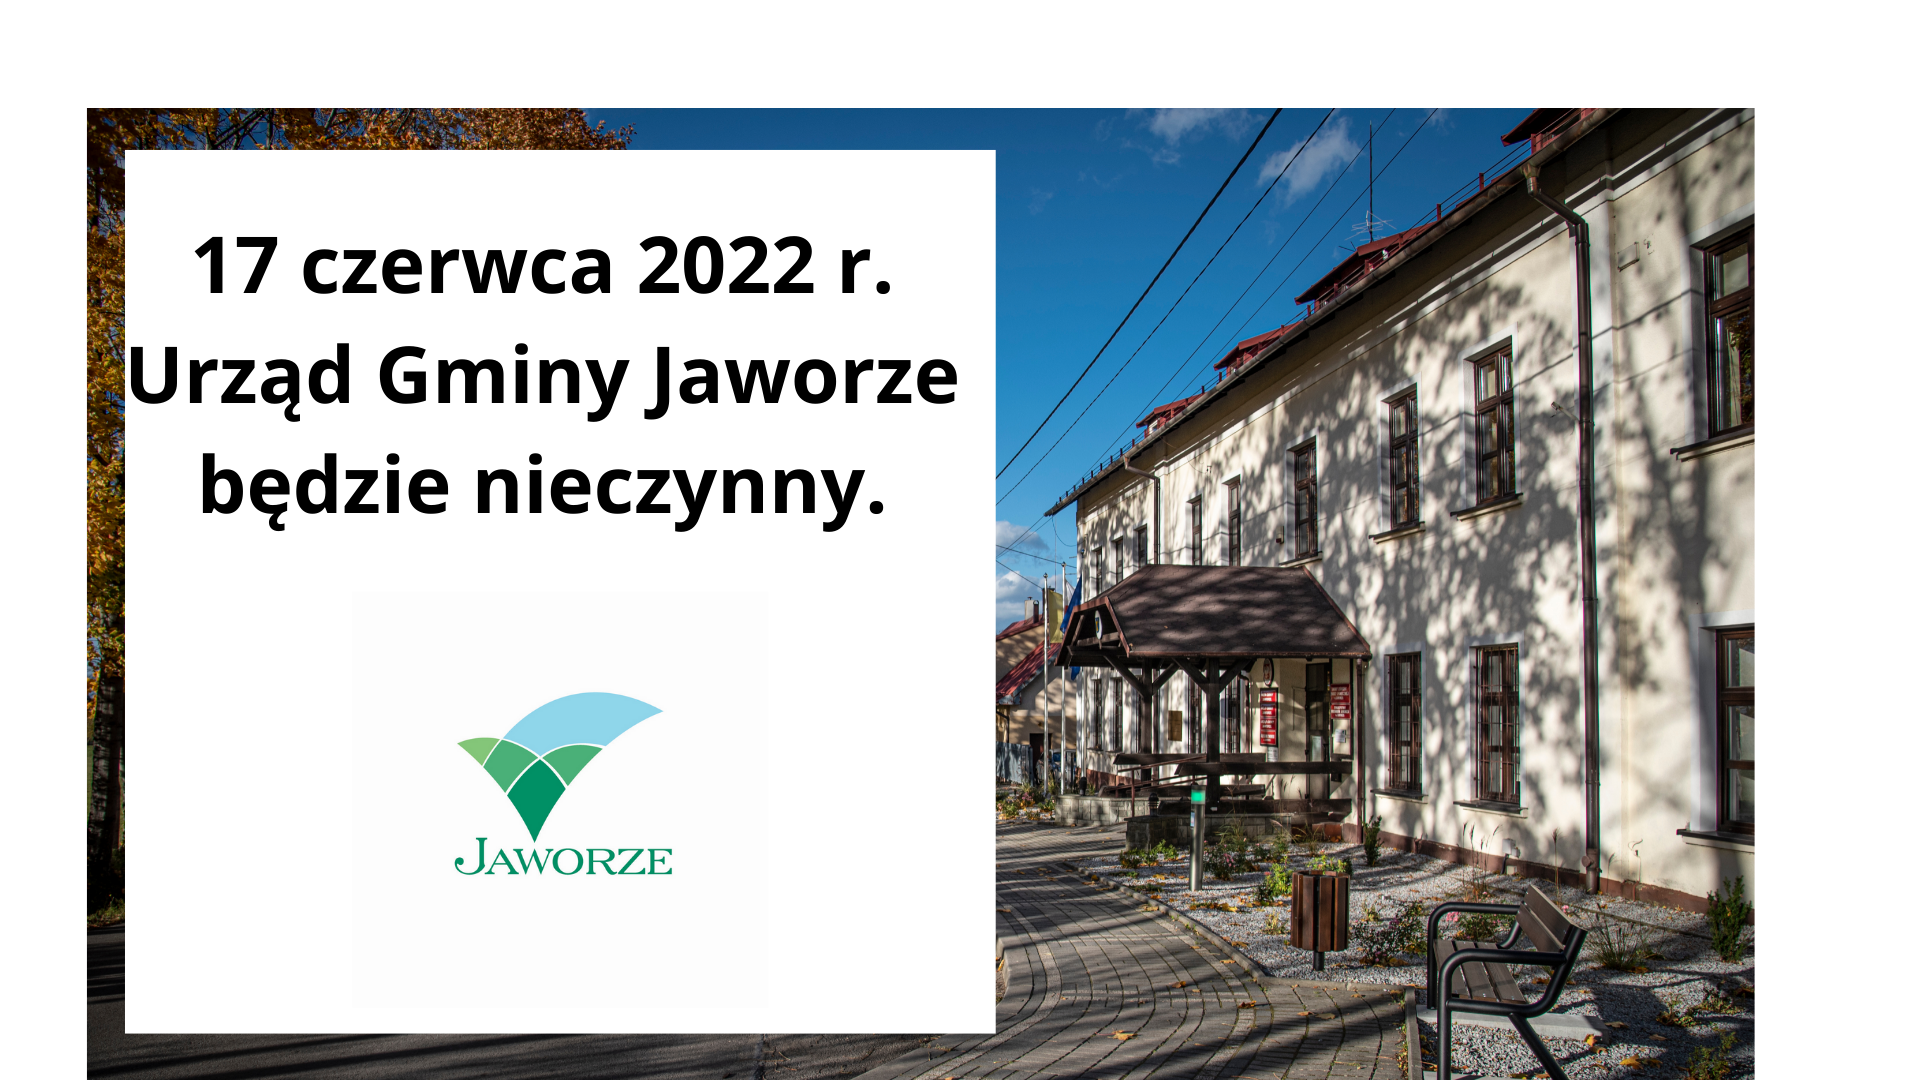 Napis: &quot;17 czerwca 2022 Urząd Gminy Jaworze będzie nieczynny&quot;, obok zdjęcie budynku Urzędu